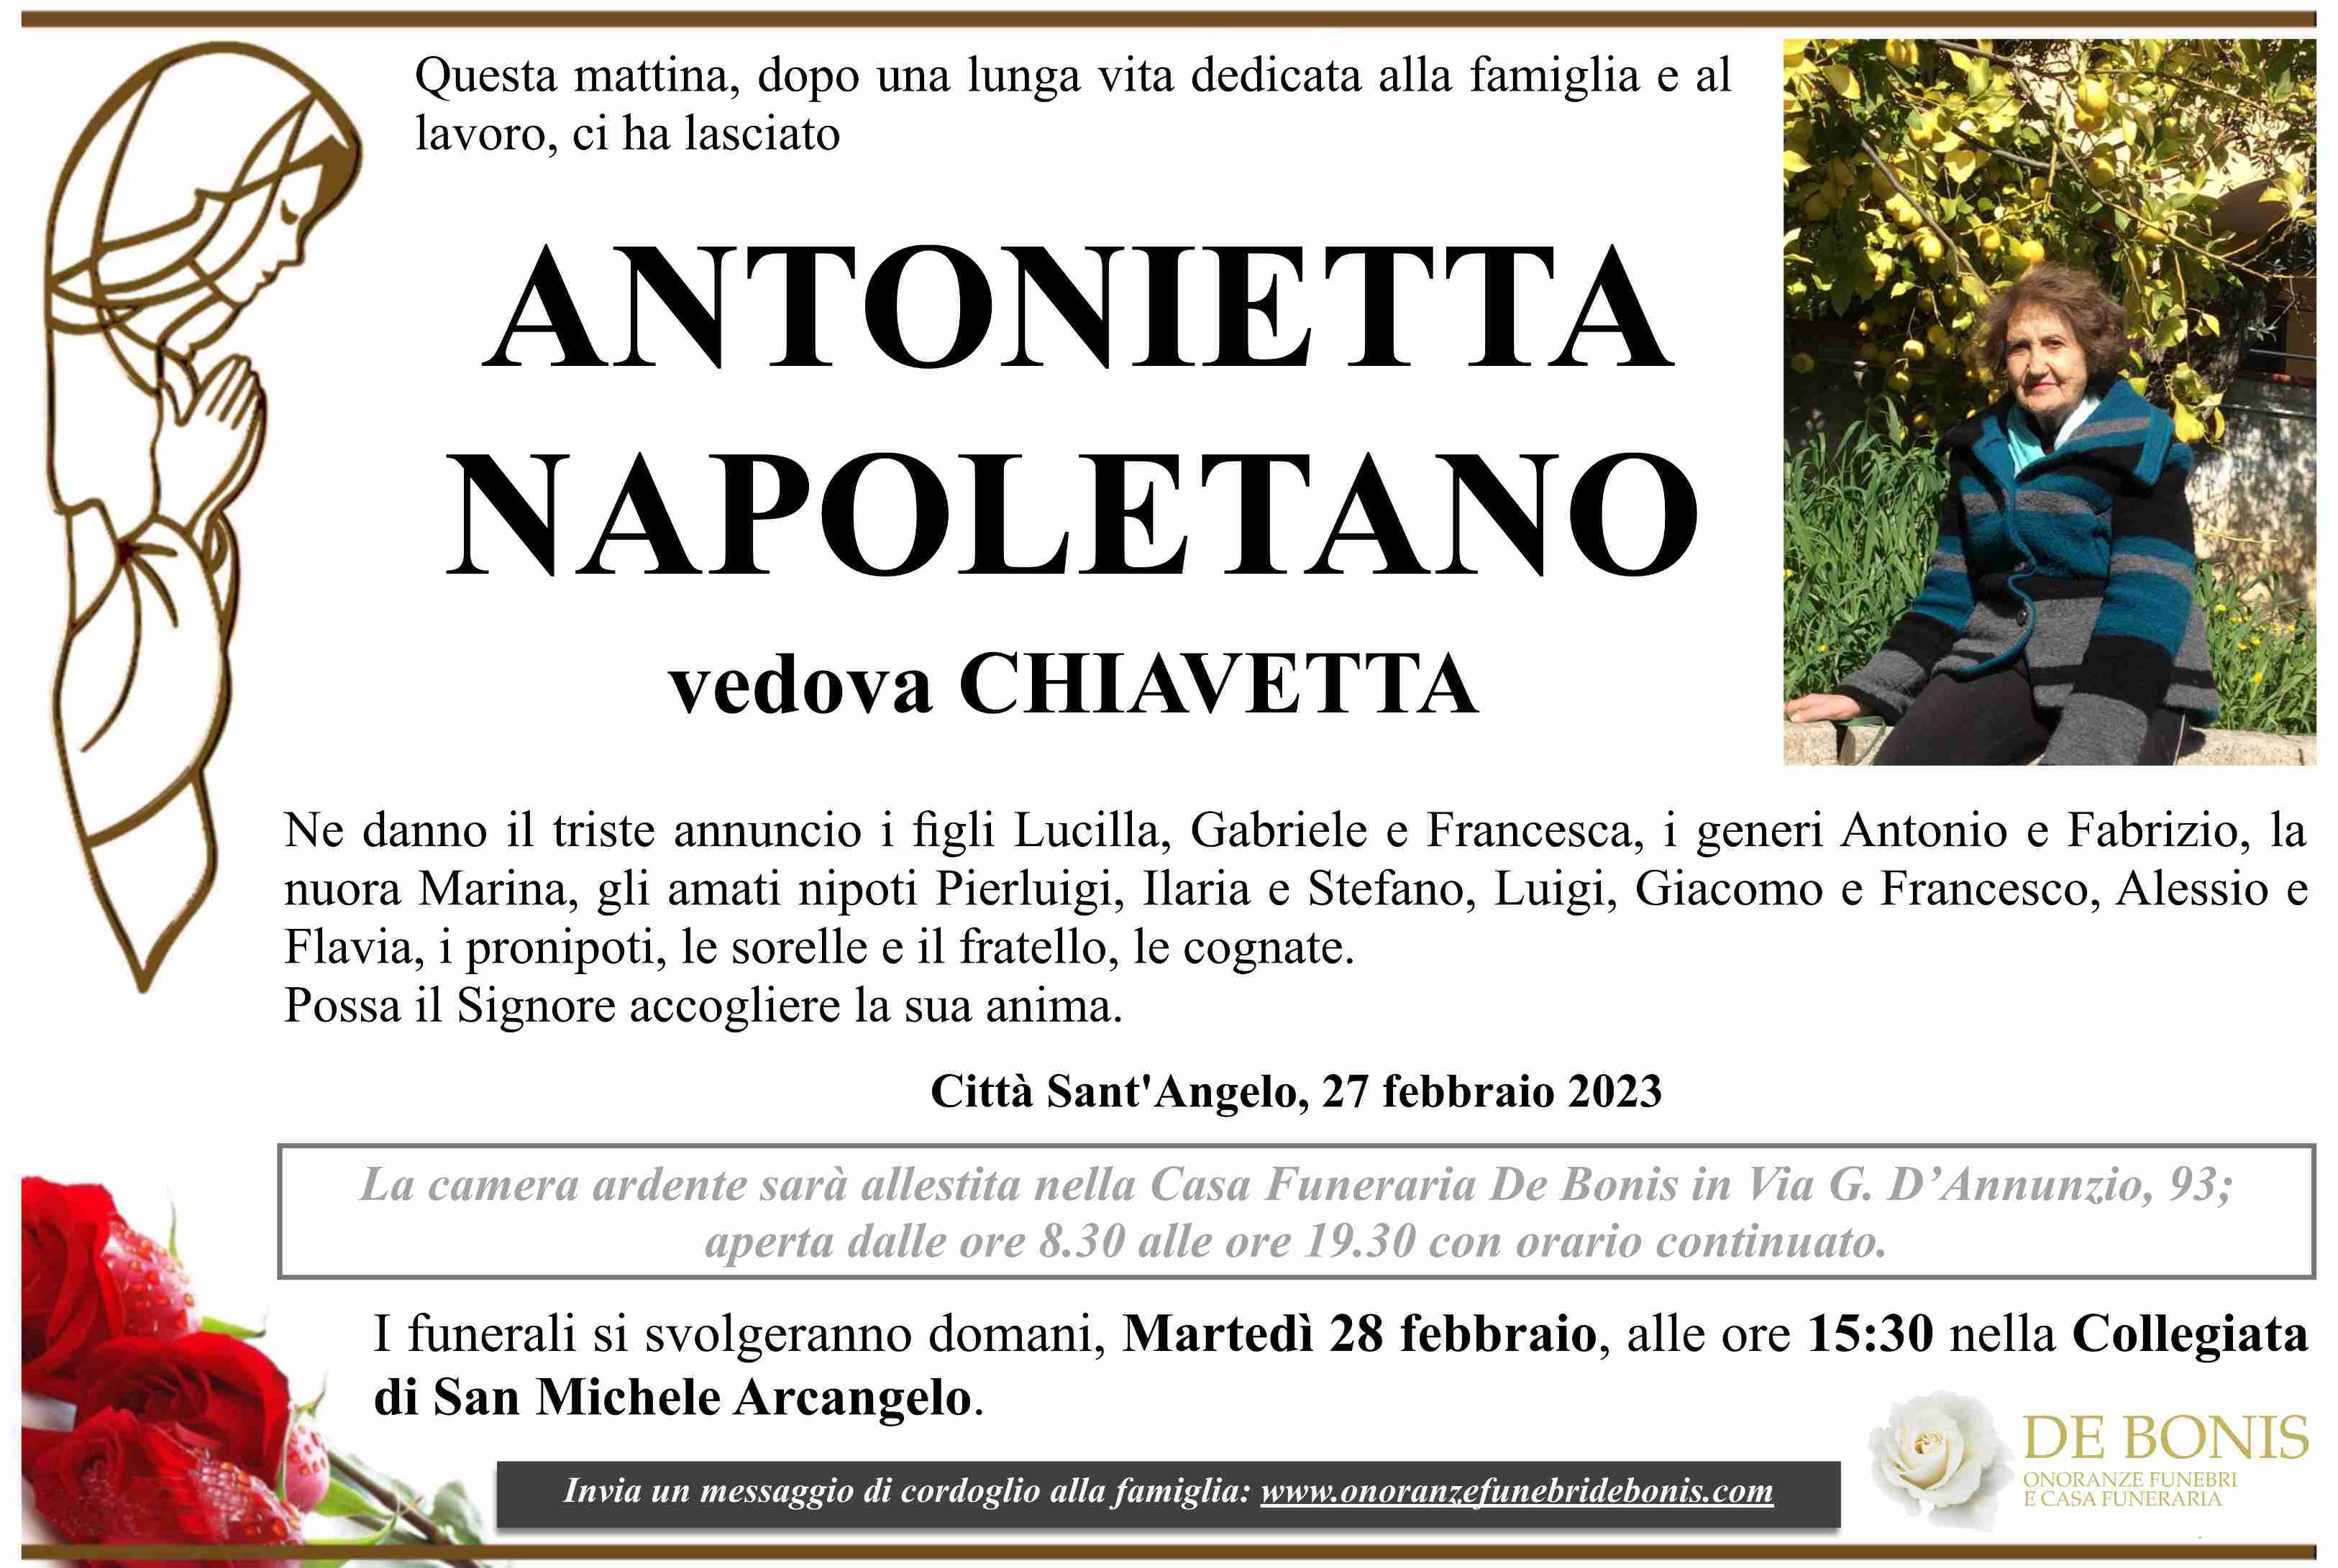 Antonietta Napoletano